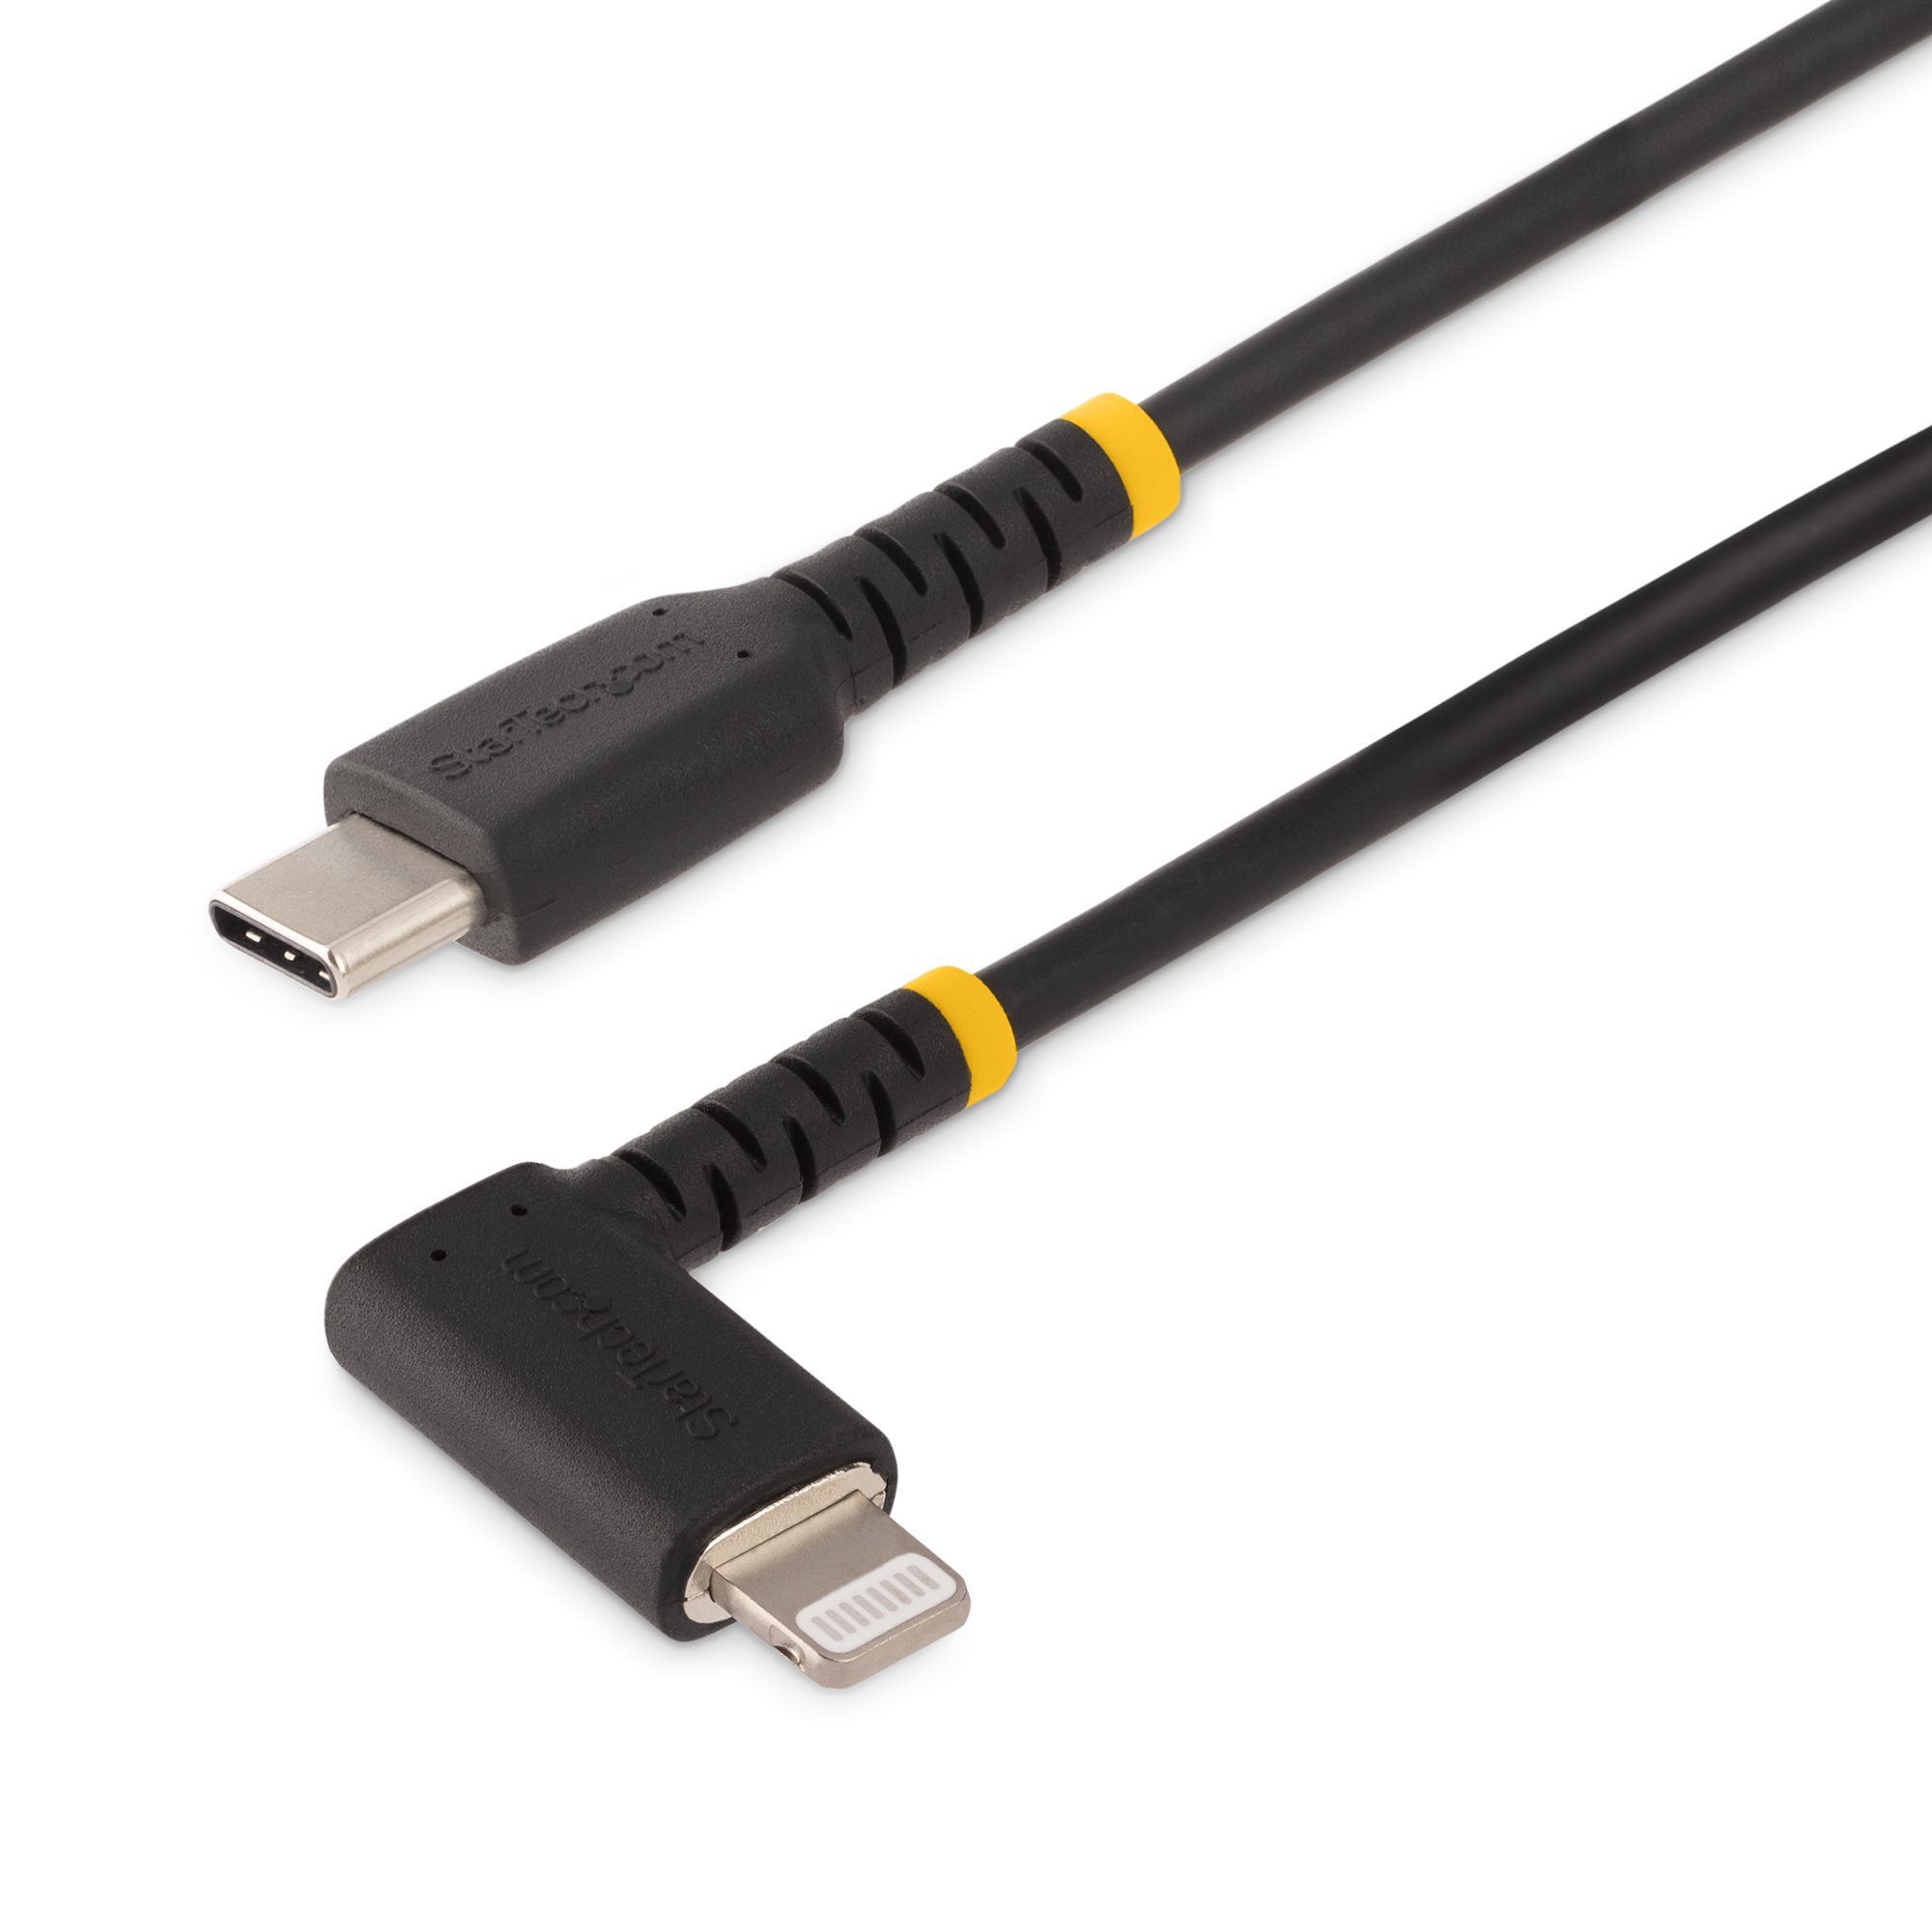 3ft/1m USB-C to Lightning Cable, Angled ライトニングケーブル 日本